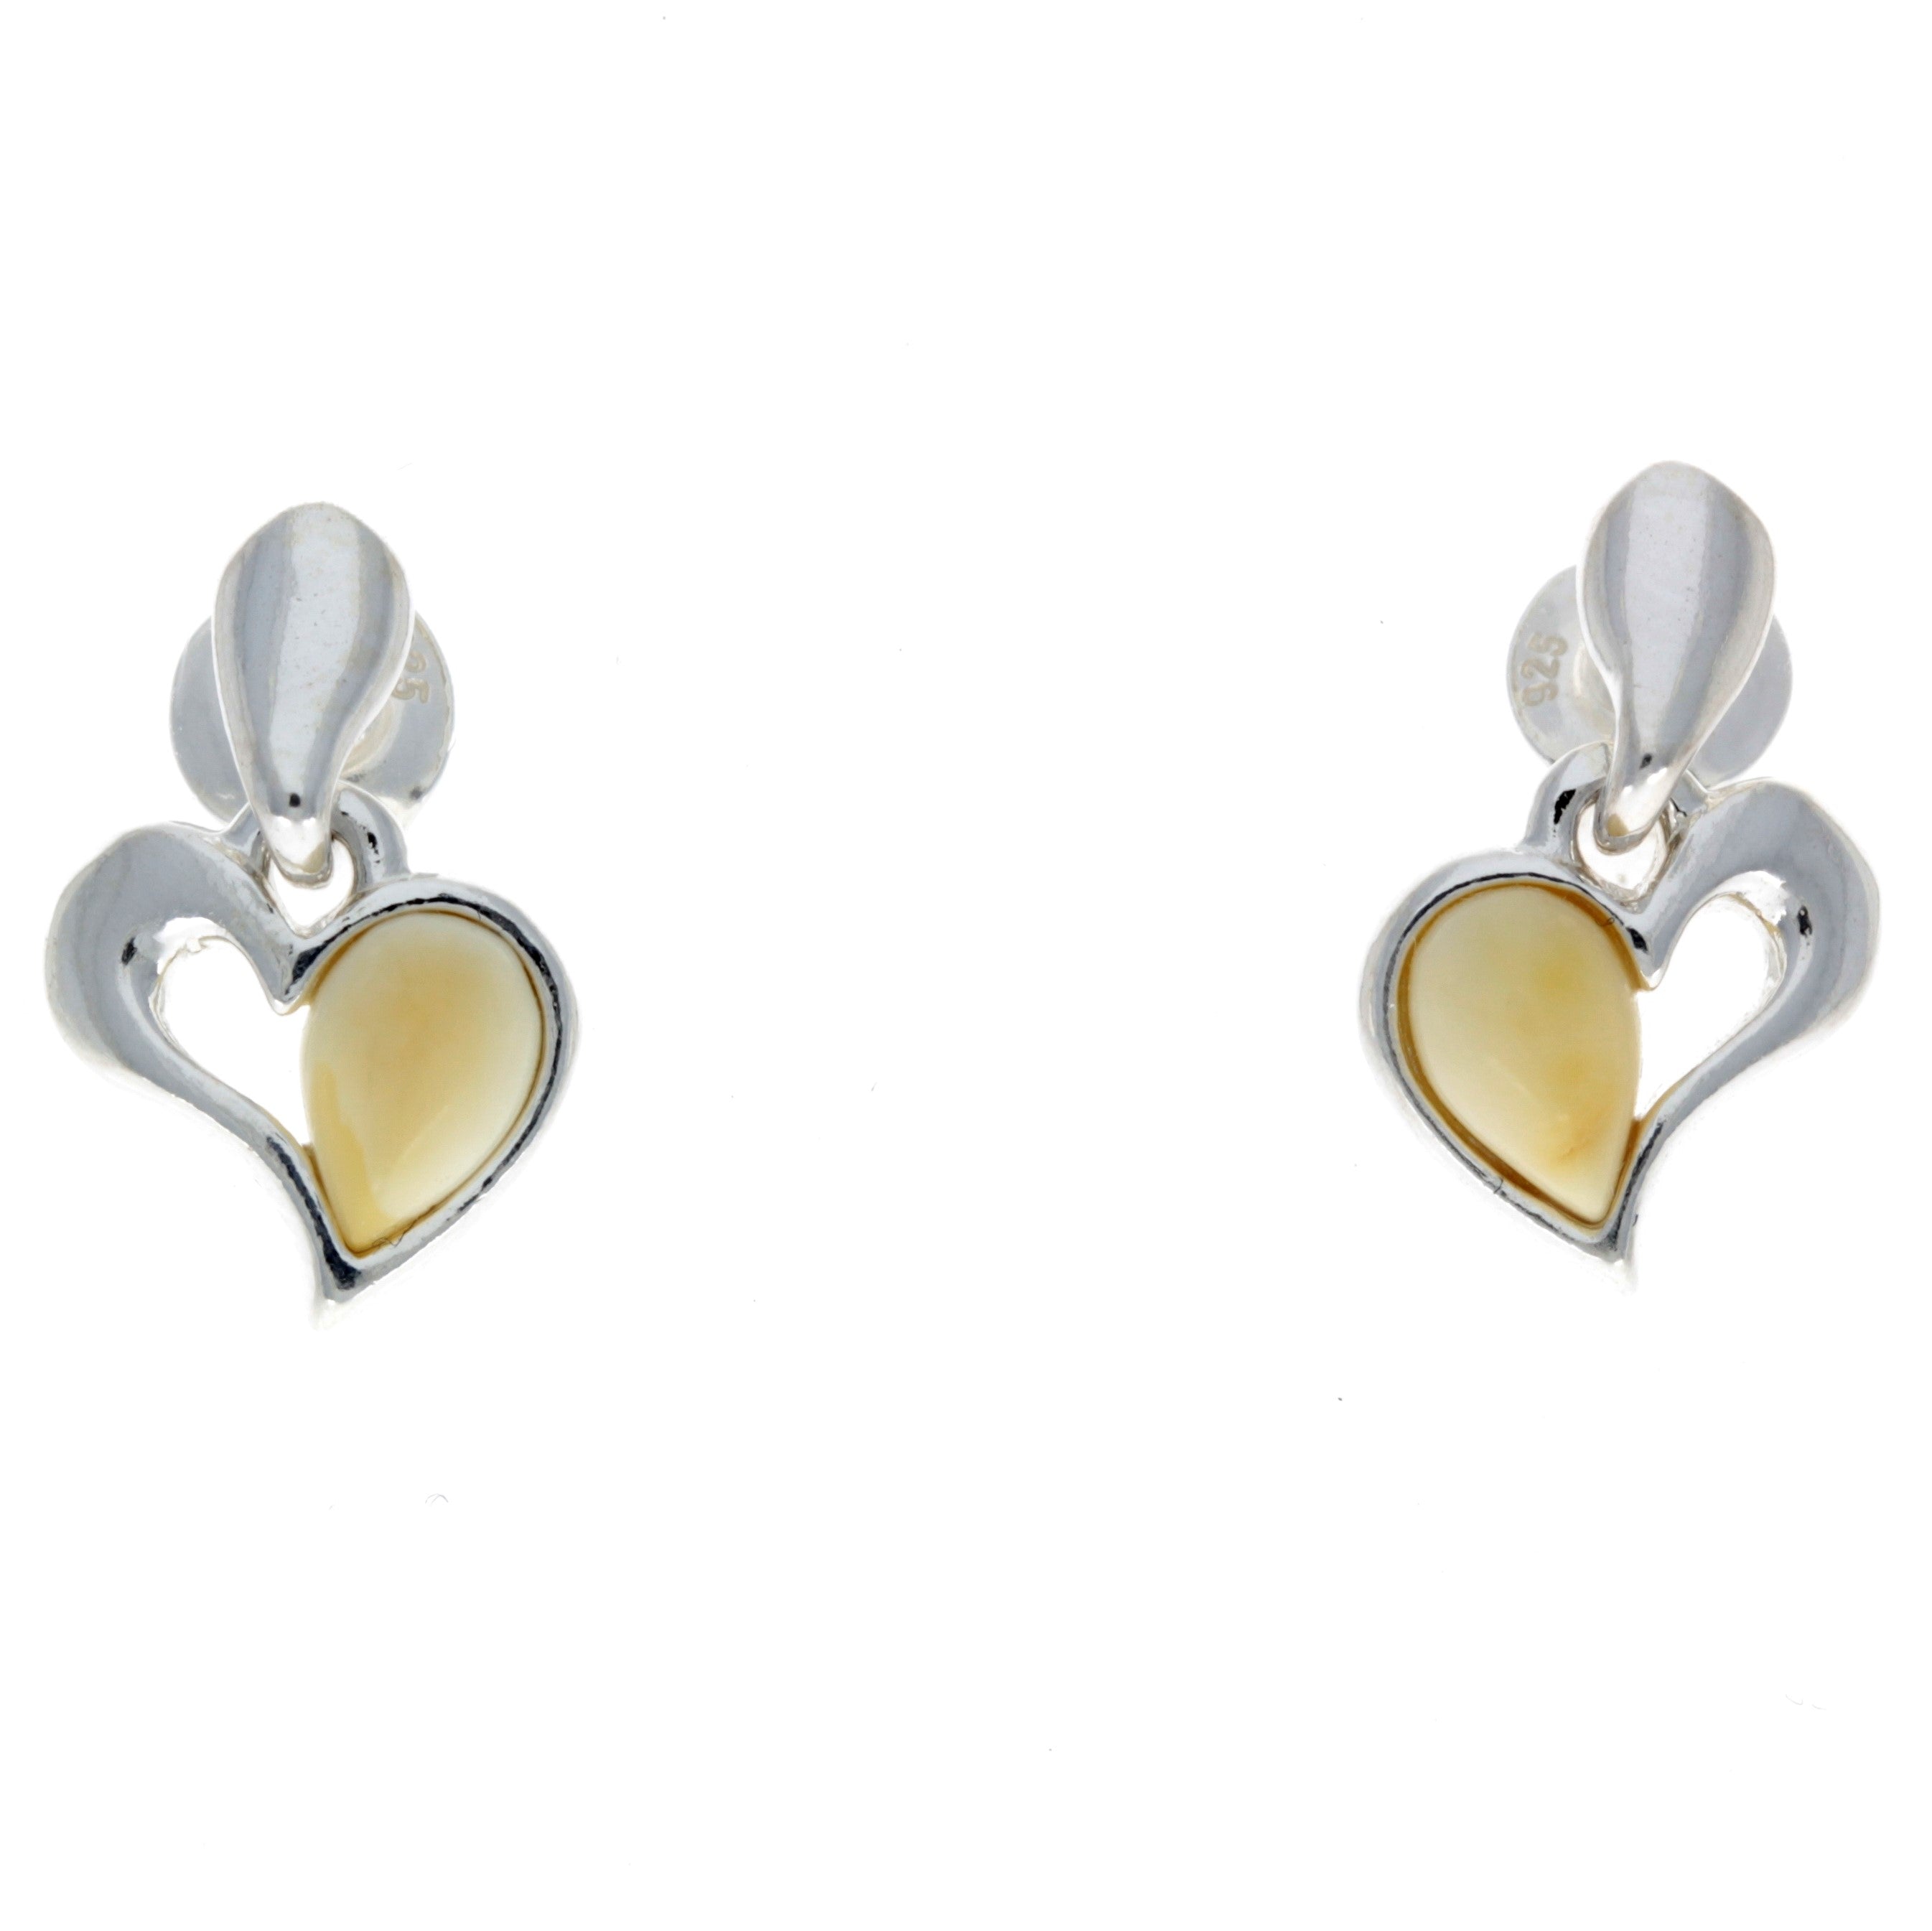 925 Sterling Silver & Baltic Amber Drop Hearts Earrings - GL154